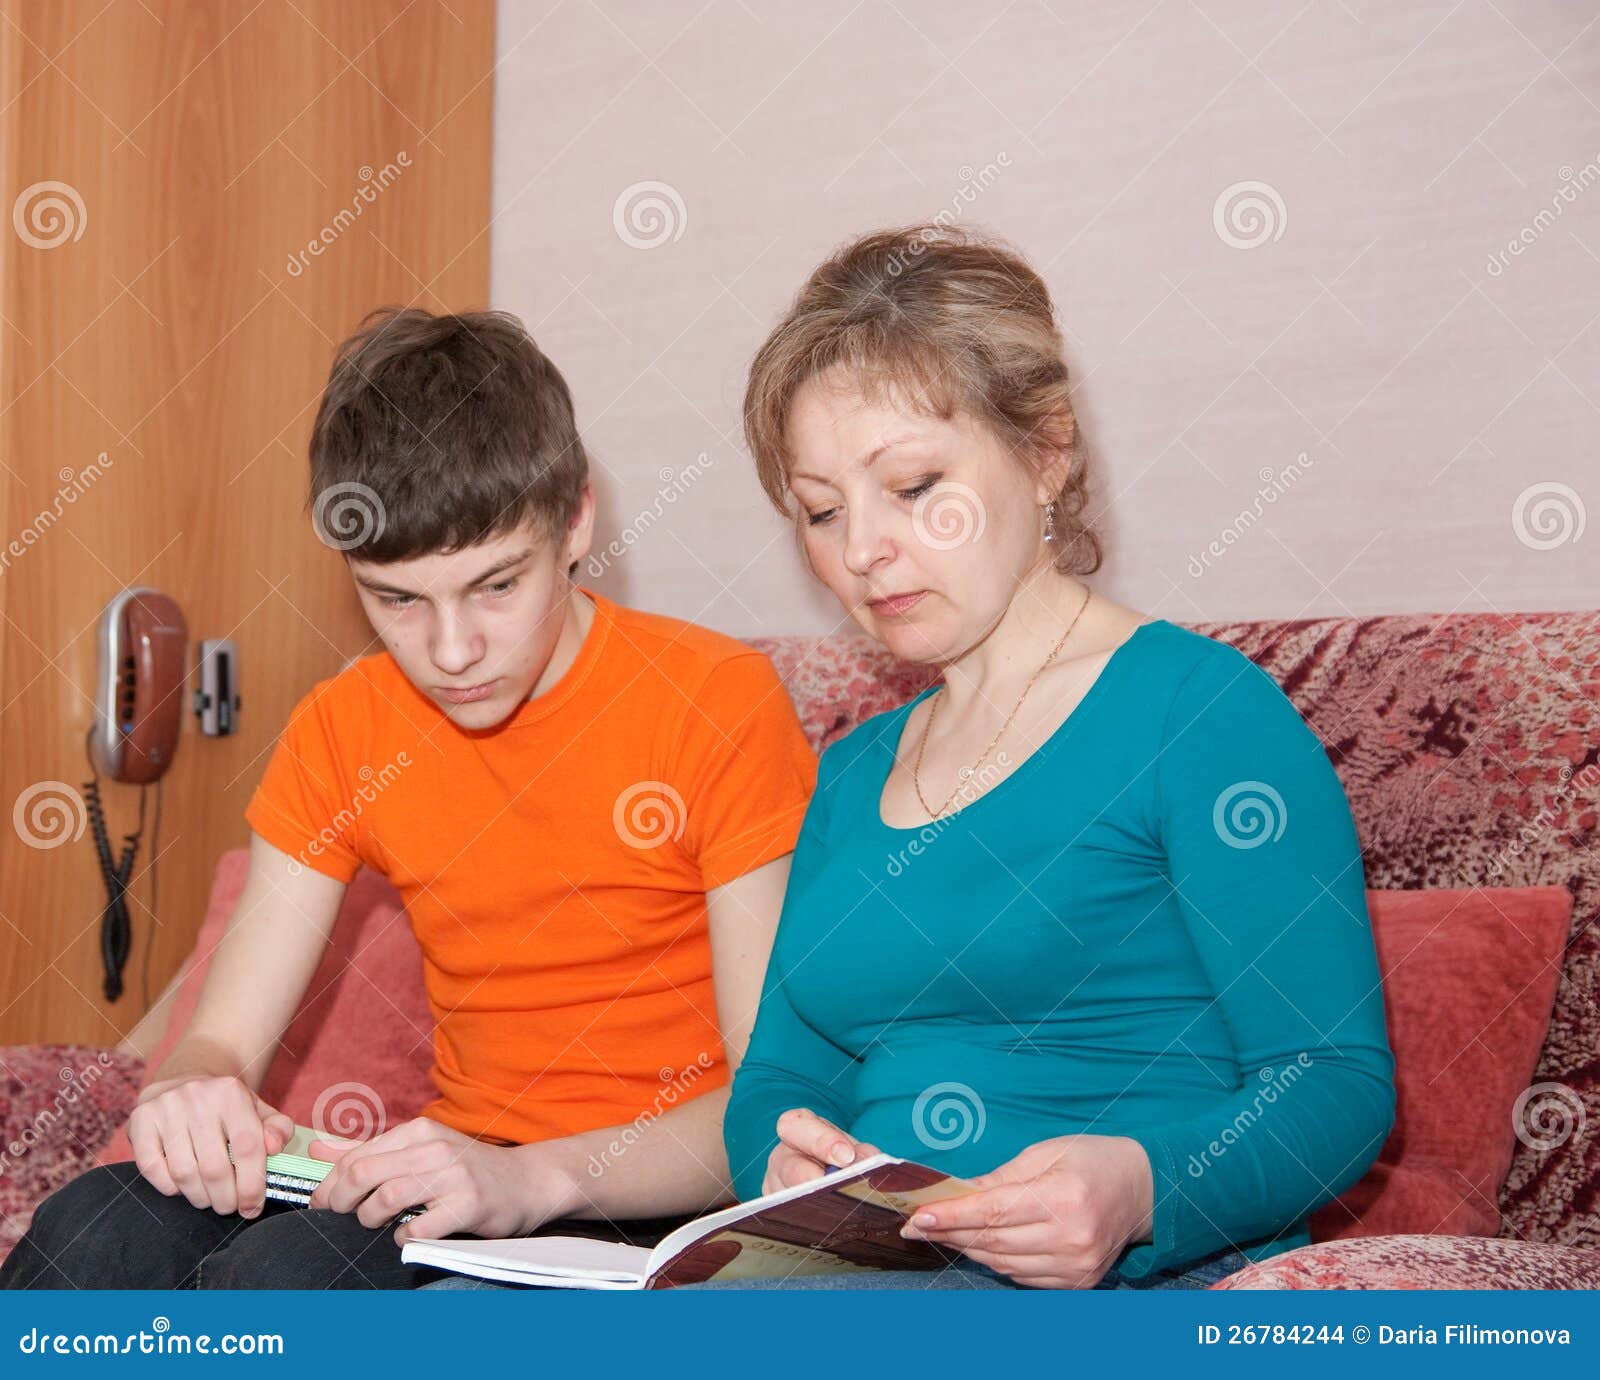 Сын взял русскую маму. Мать проводит сына. Мать и сын учатся. Мама показывает сыну картинку. Мама помогает сыну с уроками.